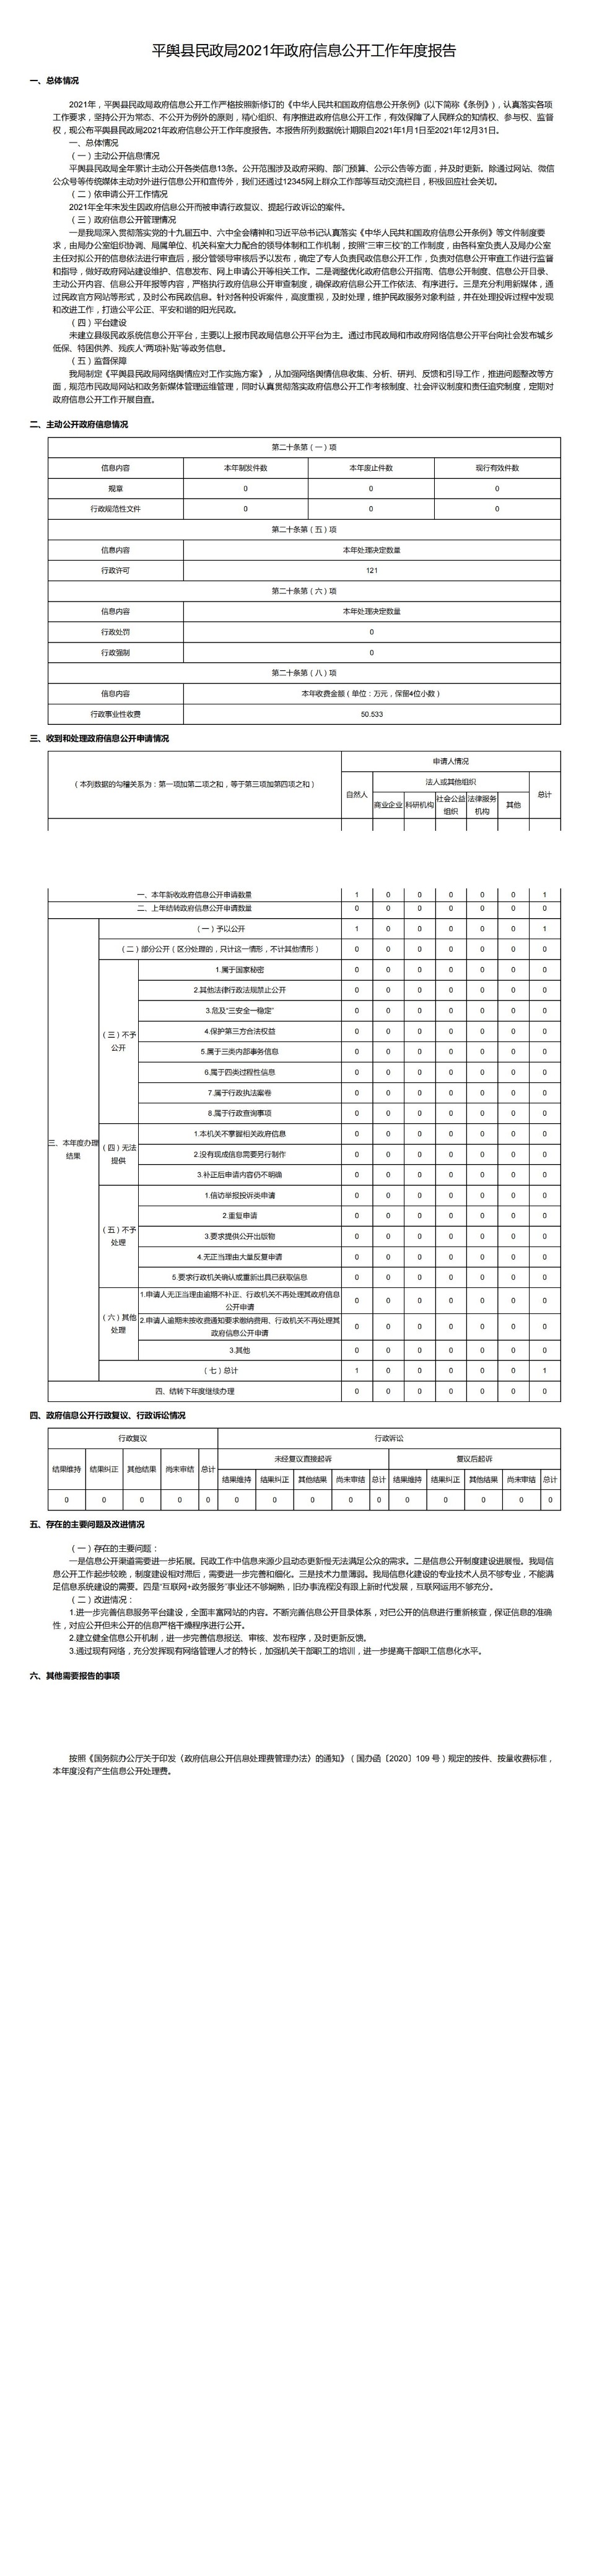 平舆县民政局2021年政府信息公开工作年度报告_00.jpg